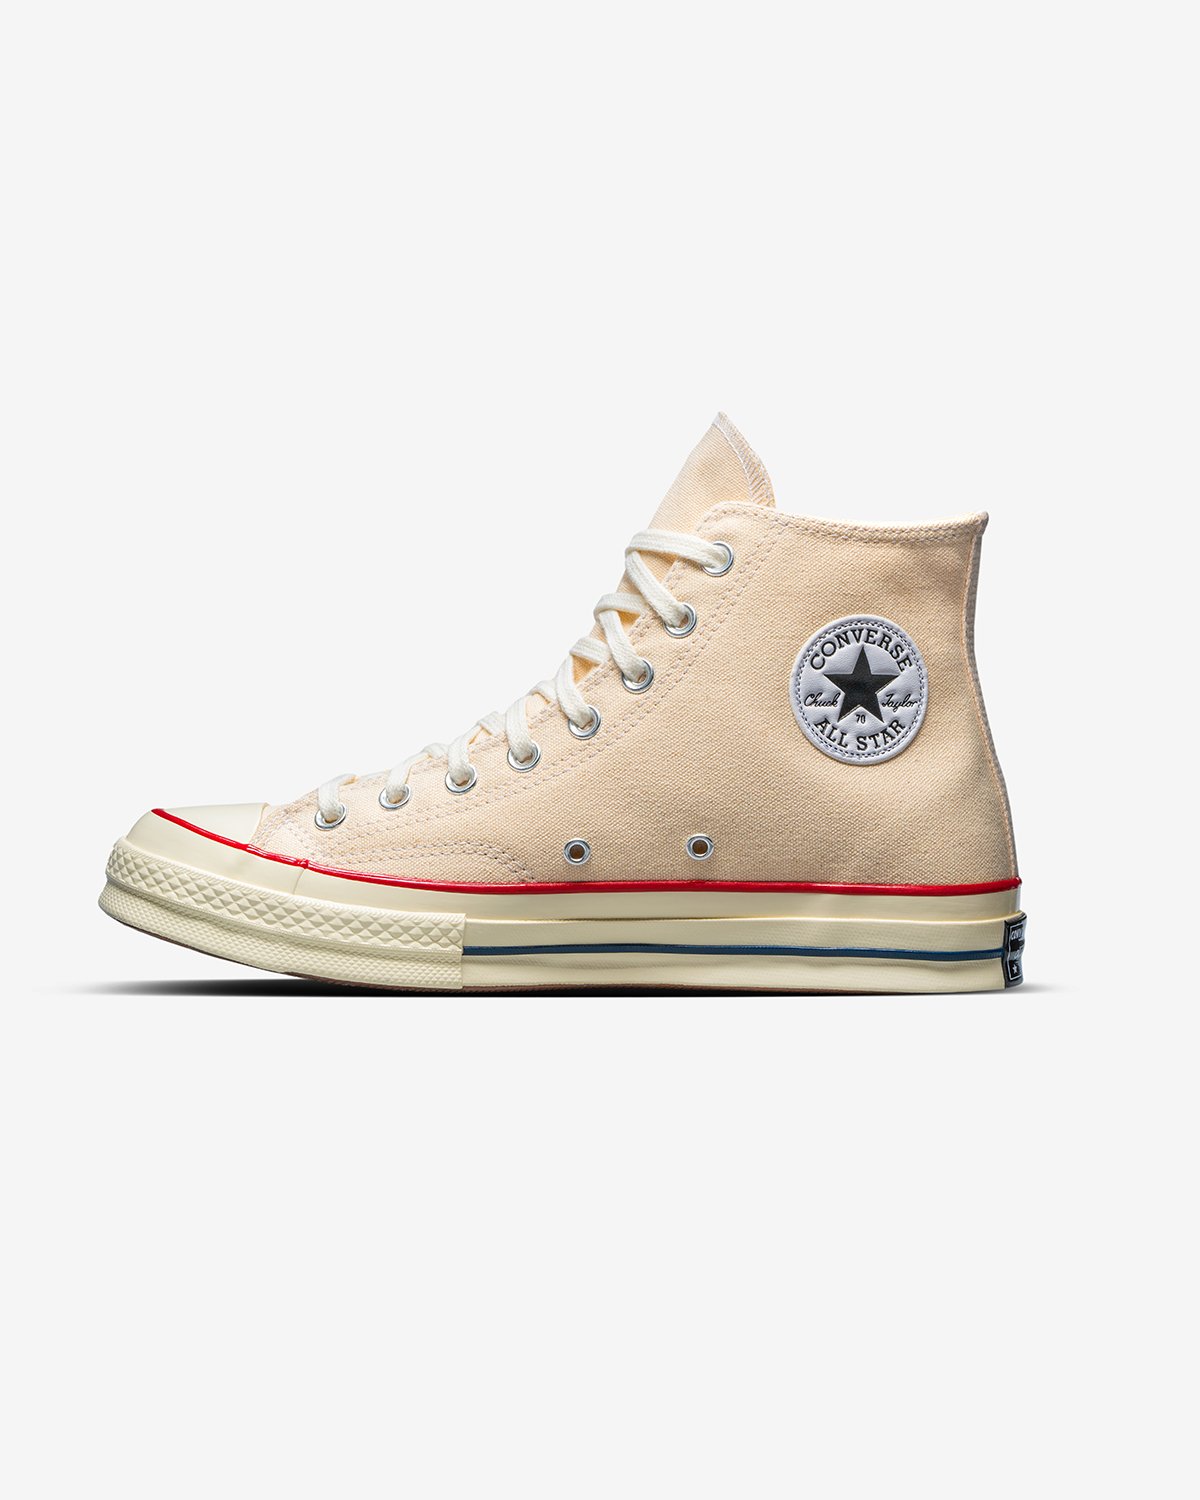 Converse - Chuck 70 Hi Parchment/Garnet/Egret - Footwear - White - Image 6